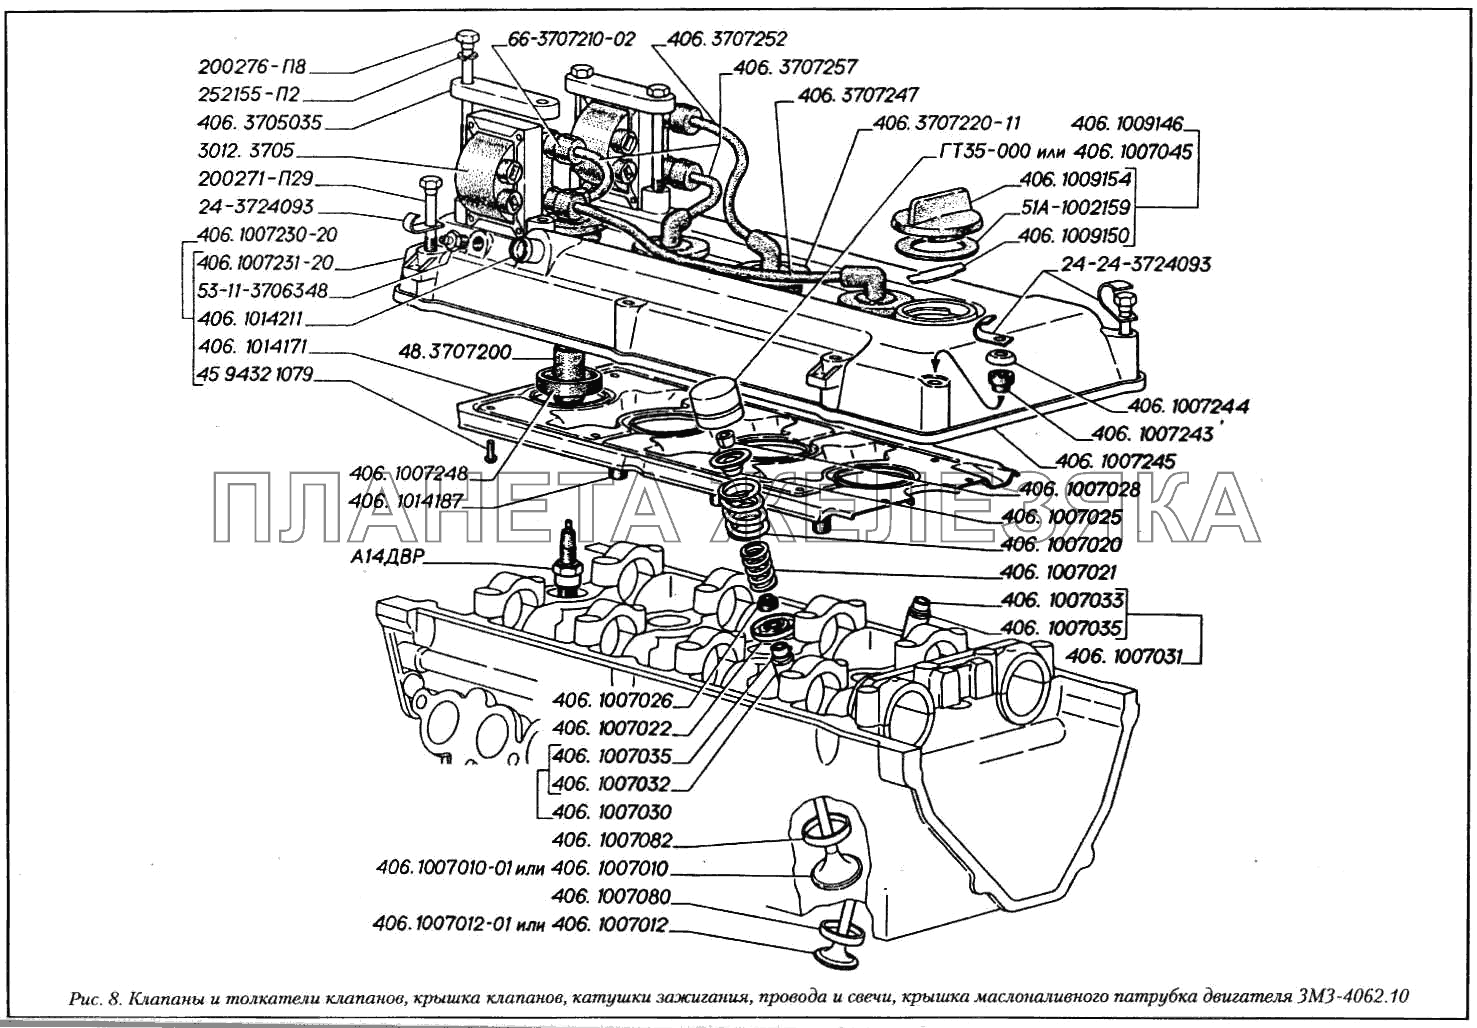 Клапаны и толкатели клапанов, крышка клапанов, катушки зажигания, провода и свечи, крышка маслоналивного патрубка двигателя ЗМЗ-4062.10 ГАЗ-3110